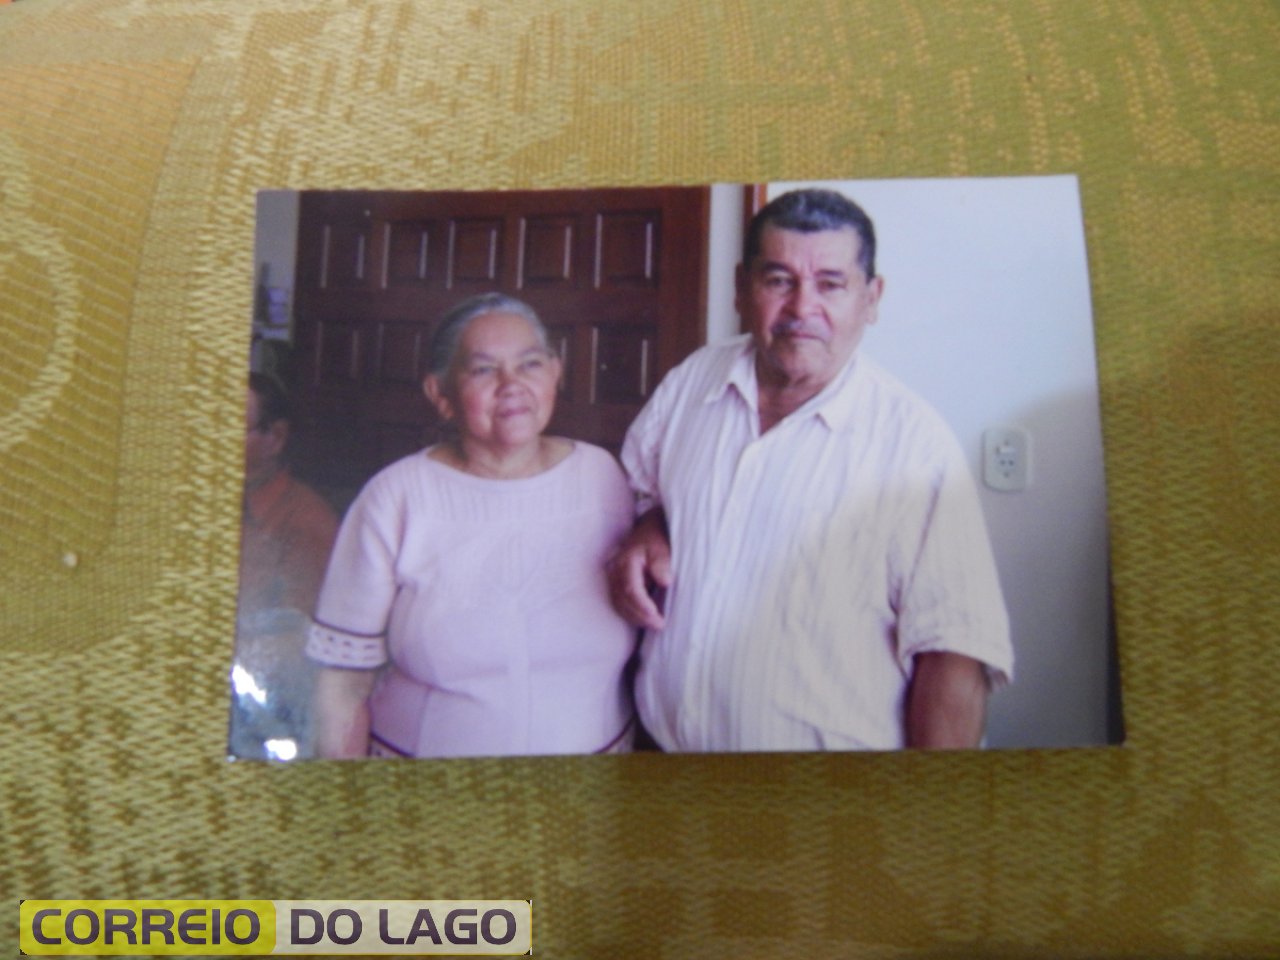 Os inseparáveis irmãos Ana Rosa Galvão e Alcides Rosa Correia. Década de 2000. Vera Cruz do Oeste - PR.